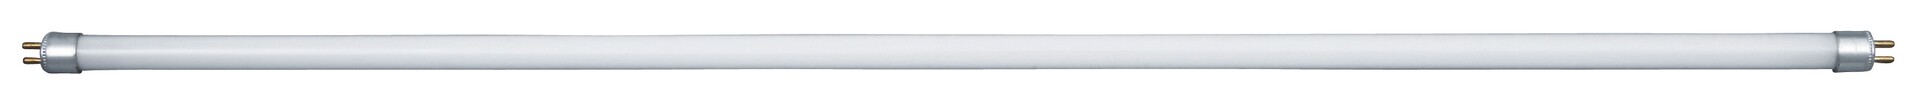 Leuchtstoffröhre Fluorescent 1744, G5, 20W, 2700K, 1500lm, warmweiß, ø12.5mm